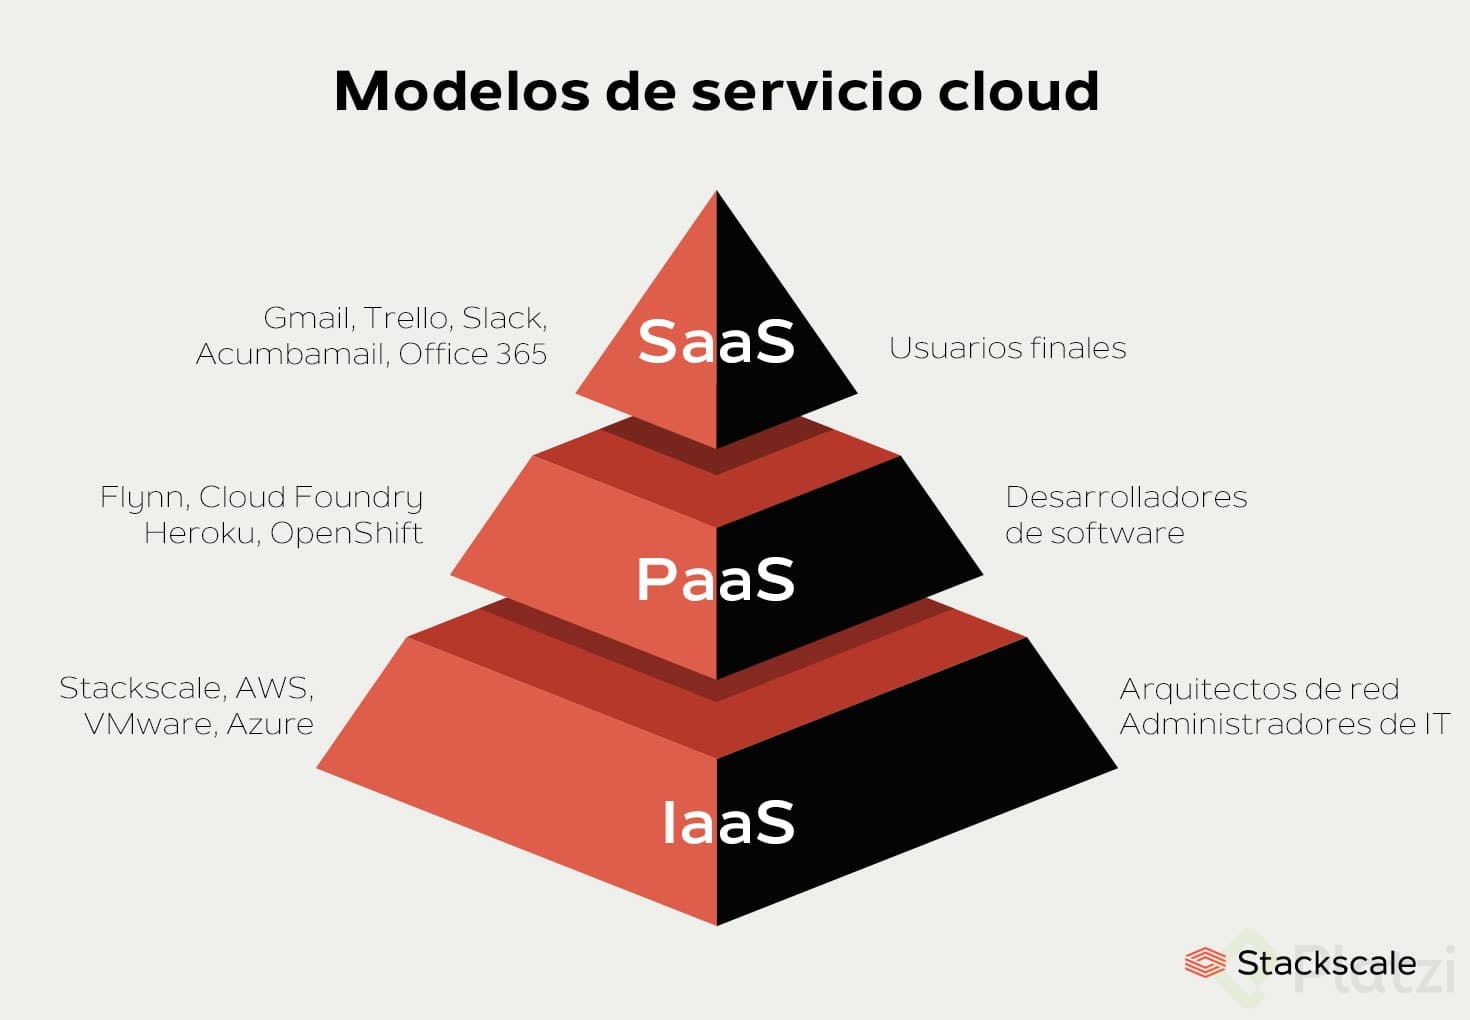 modelos-servicios-cloud-iaas-paas-saas-stackscale.jpg